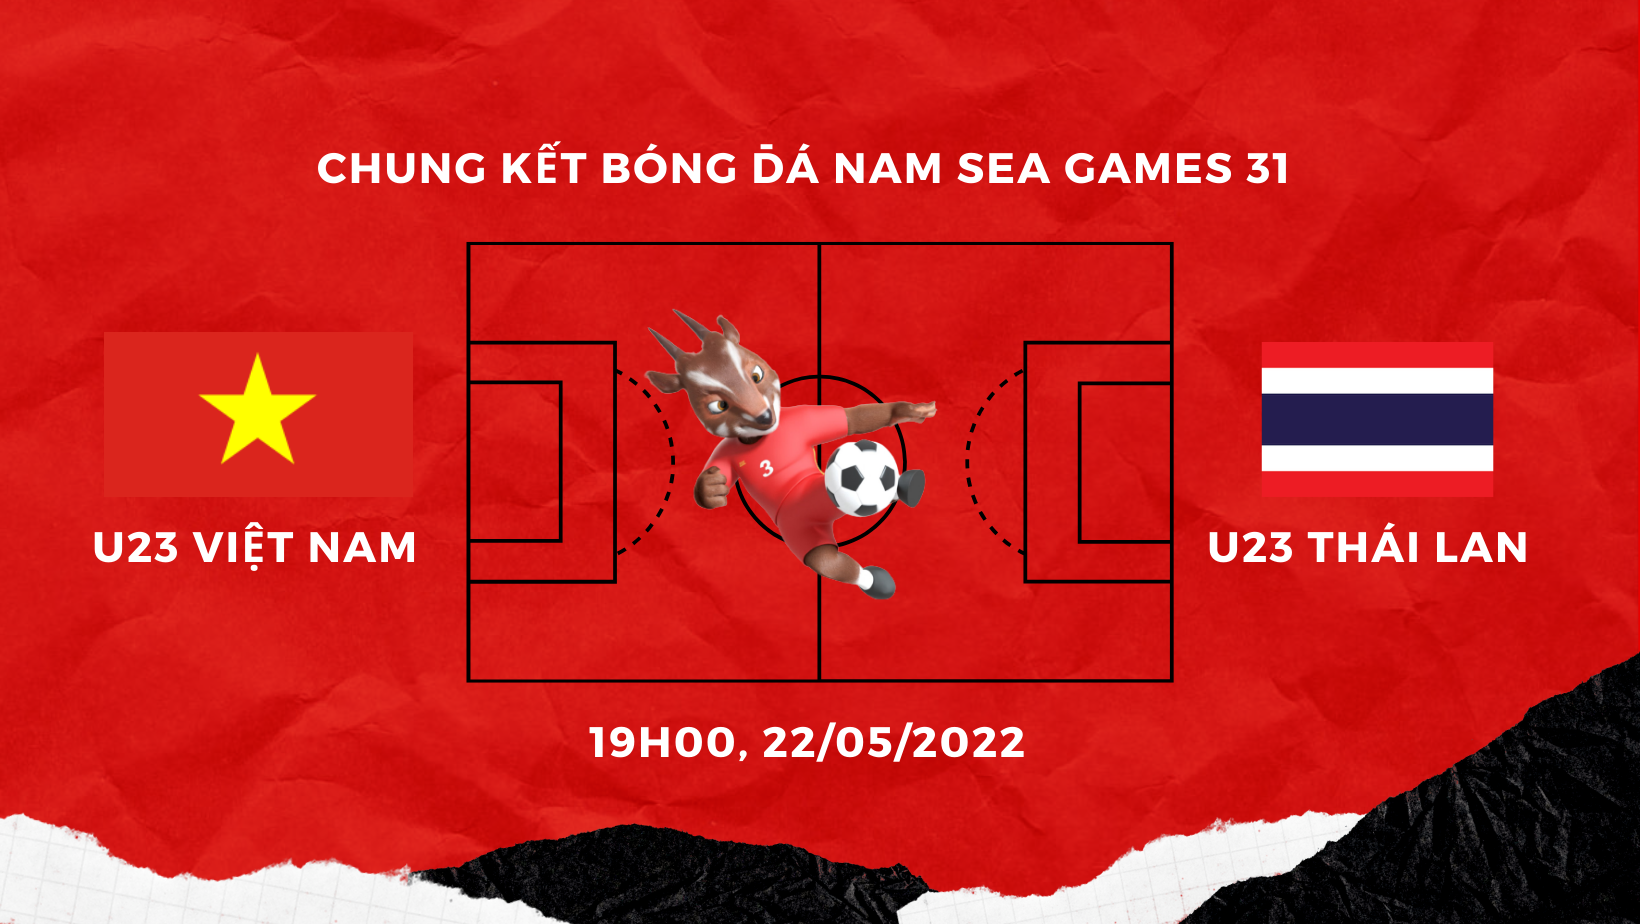 U23 Việt Nam vs U23 Thái Lan – Chung kết SEA Games 31 – HCV thuộc về ai?